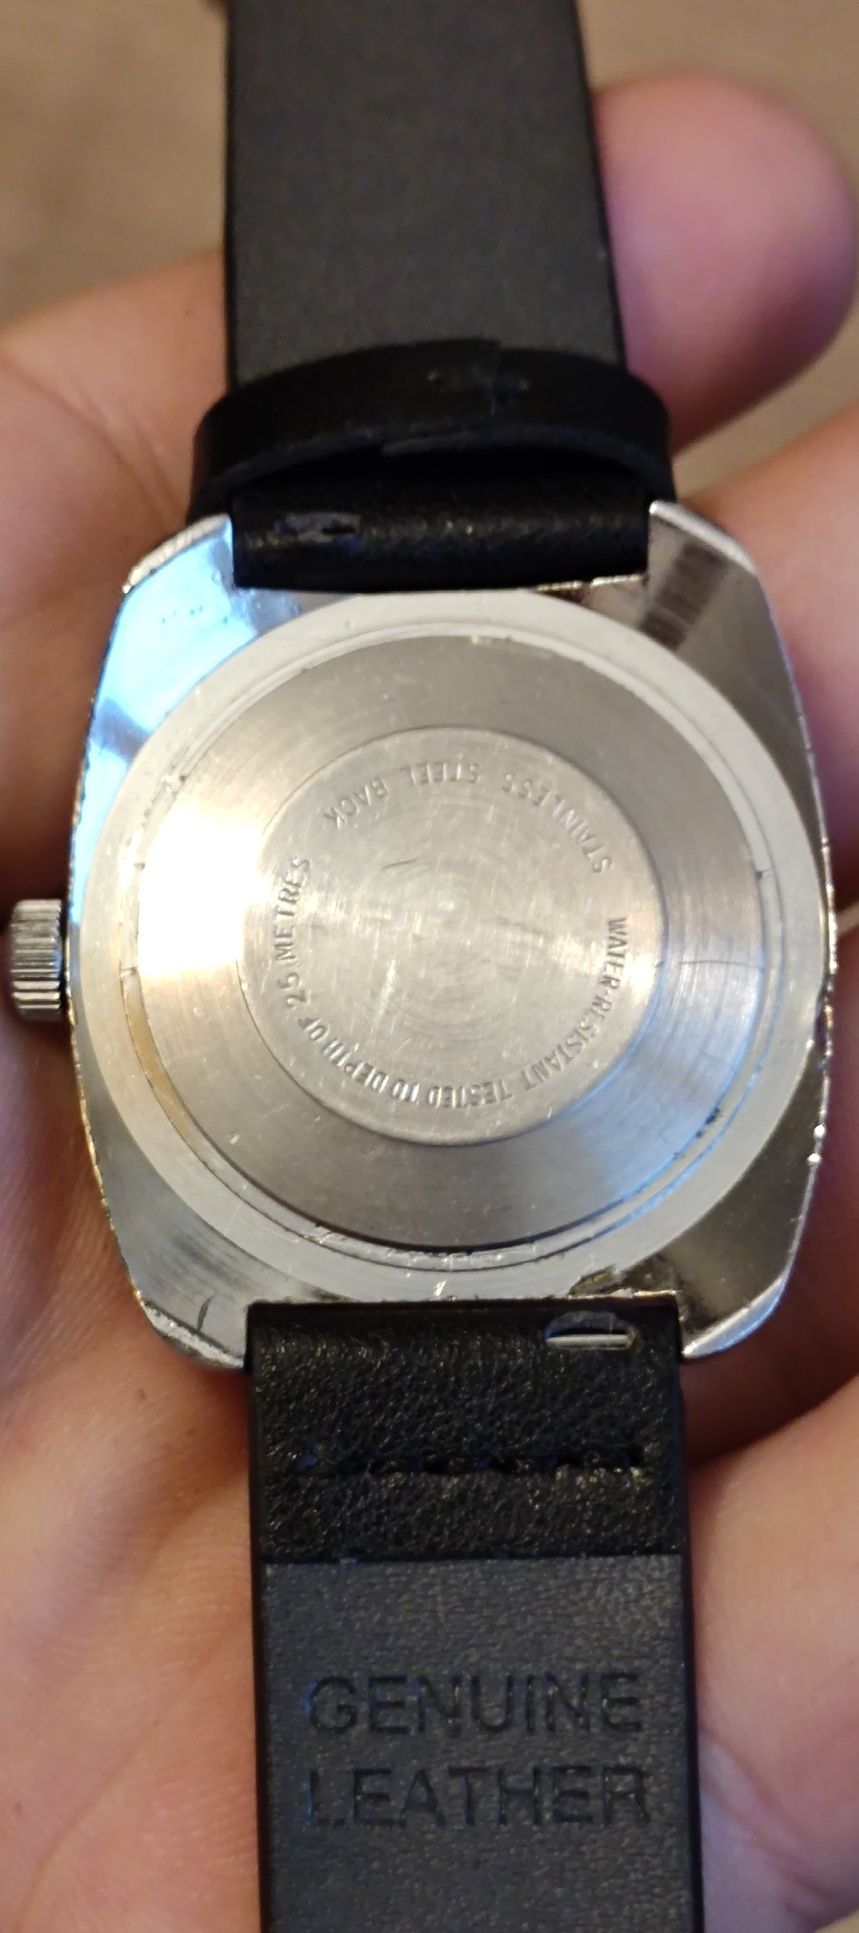 Zegarek Timex vintage.